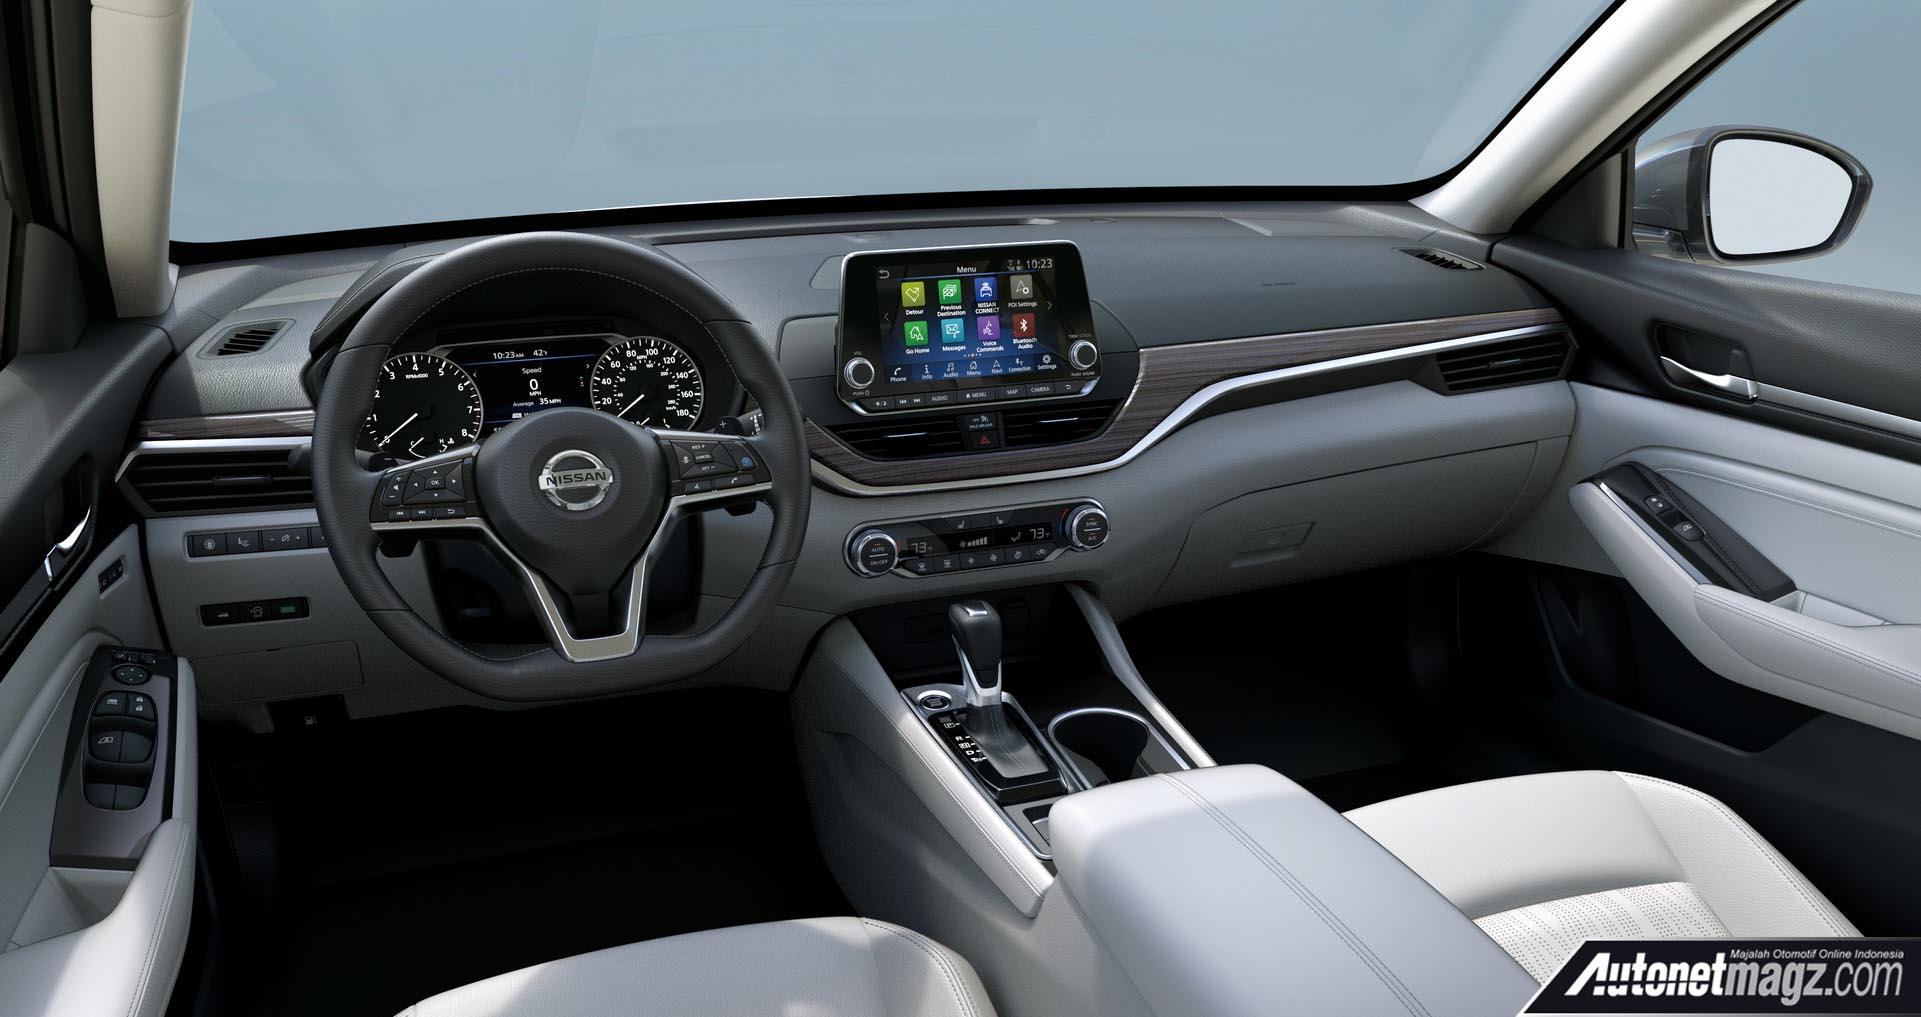 Berita, Nissan Altima 2019 Interior: Nissan Altima 2019 Hadir dengan Mesin Turbo dan AWD